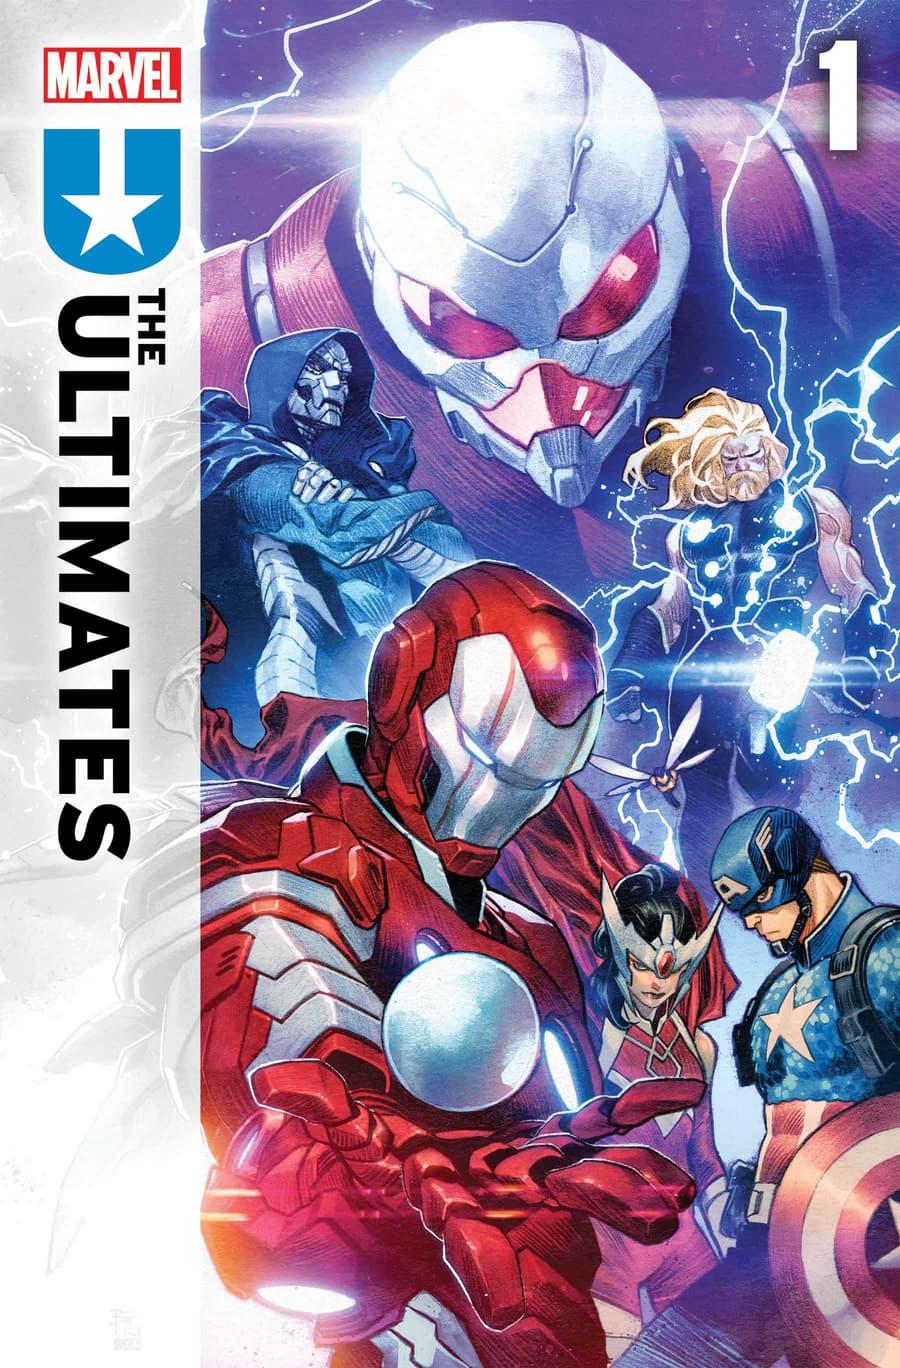 Превью Marvel's Ultimates #1 собирает лучших Мстителей